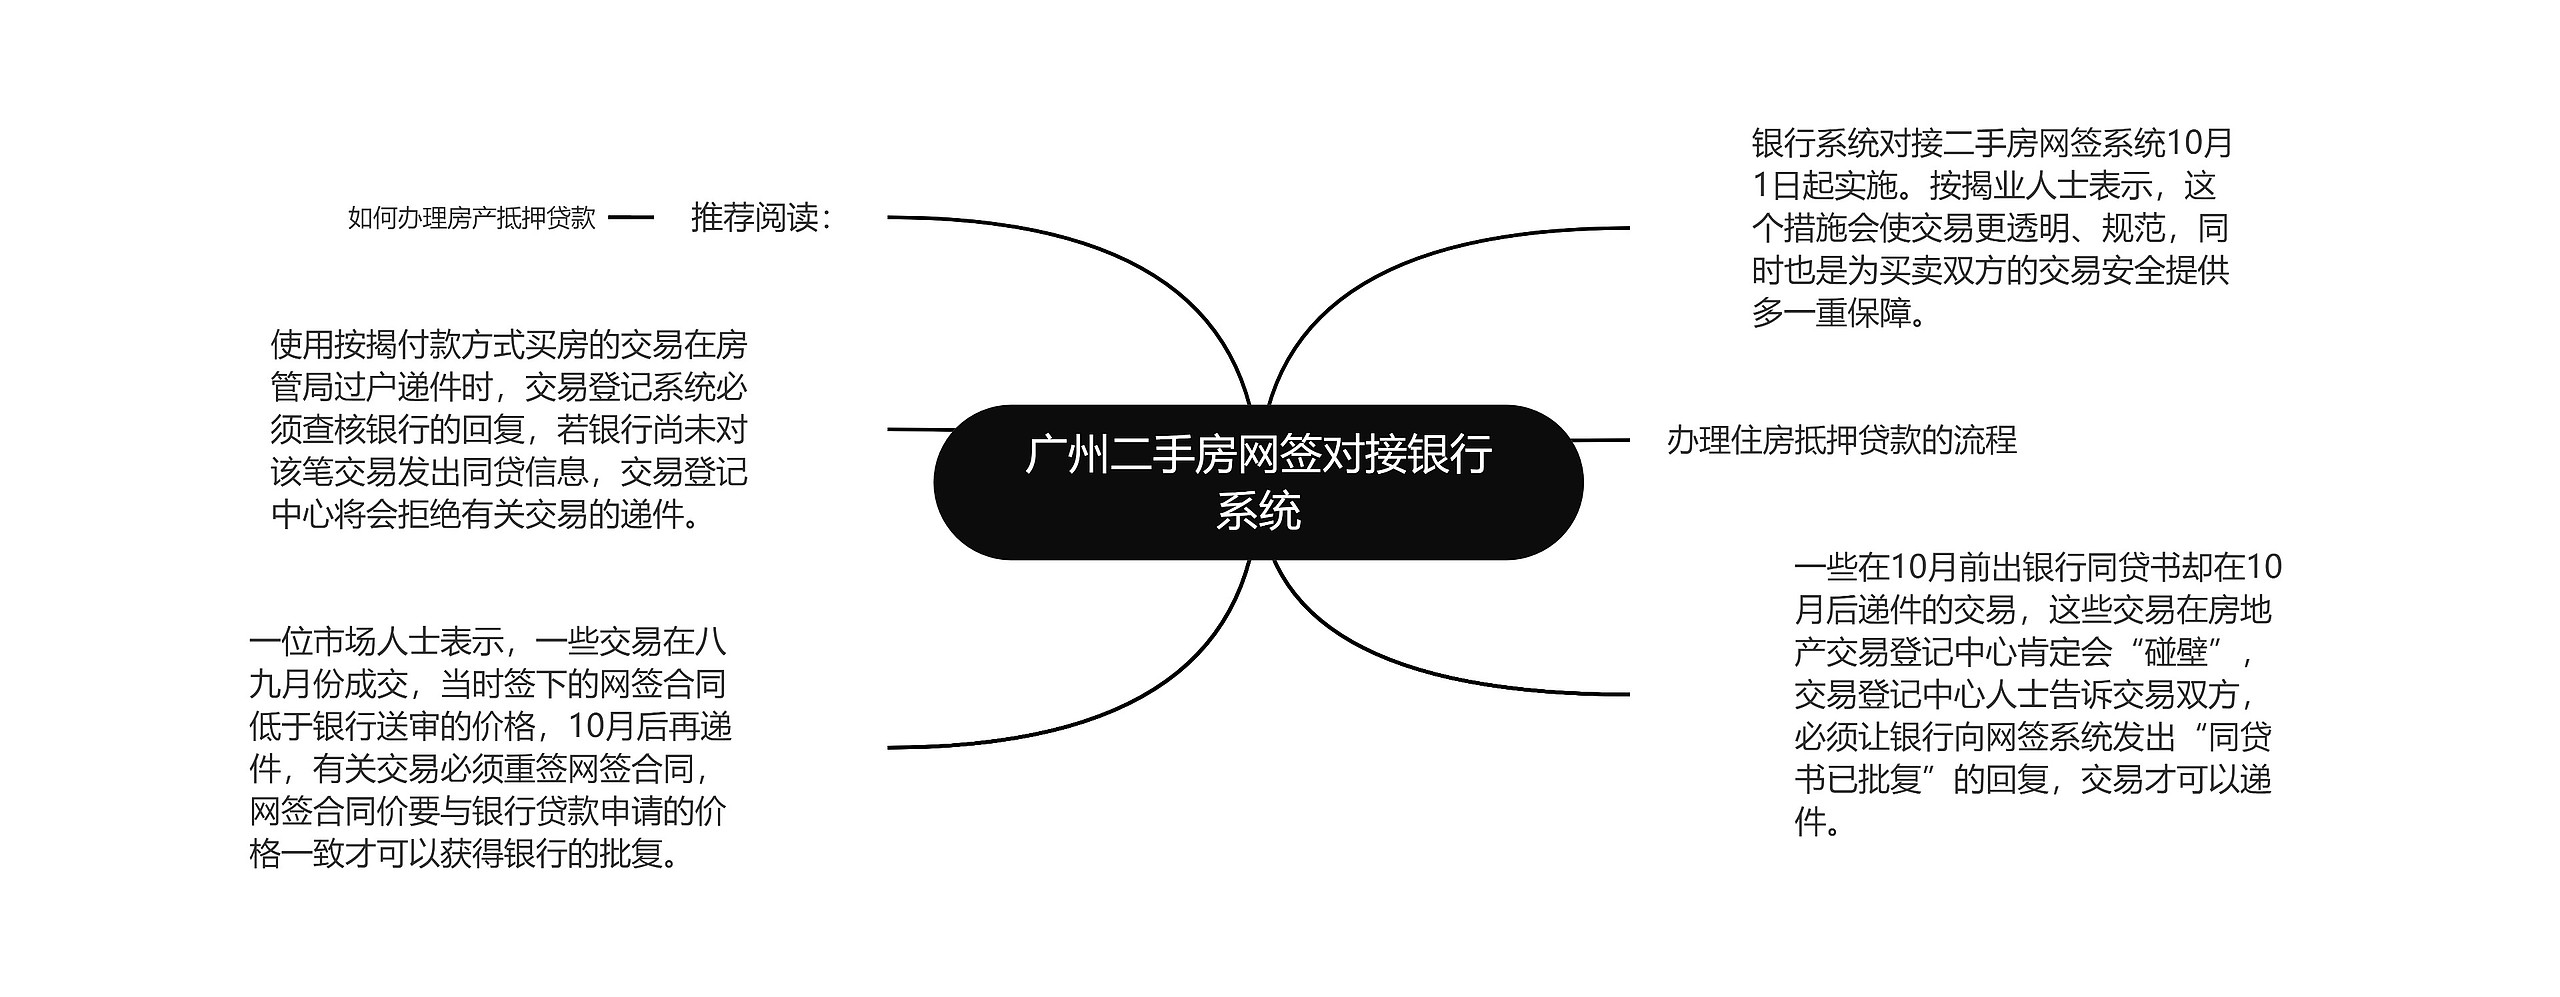 广州二手房网签对接银行系统思维导图